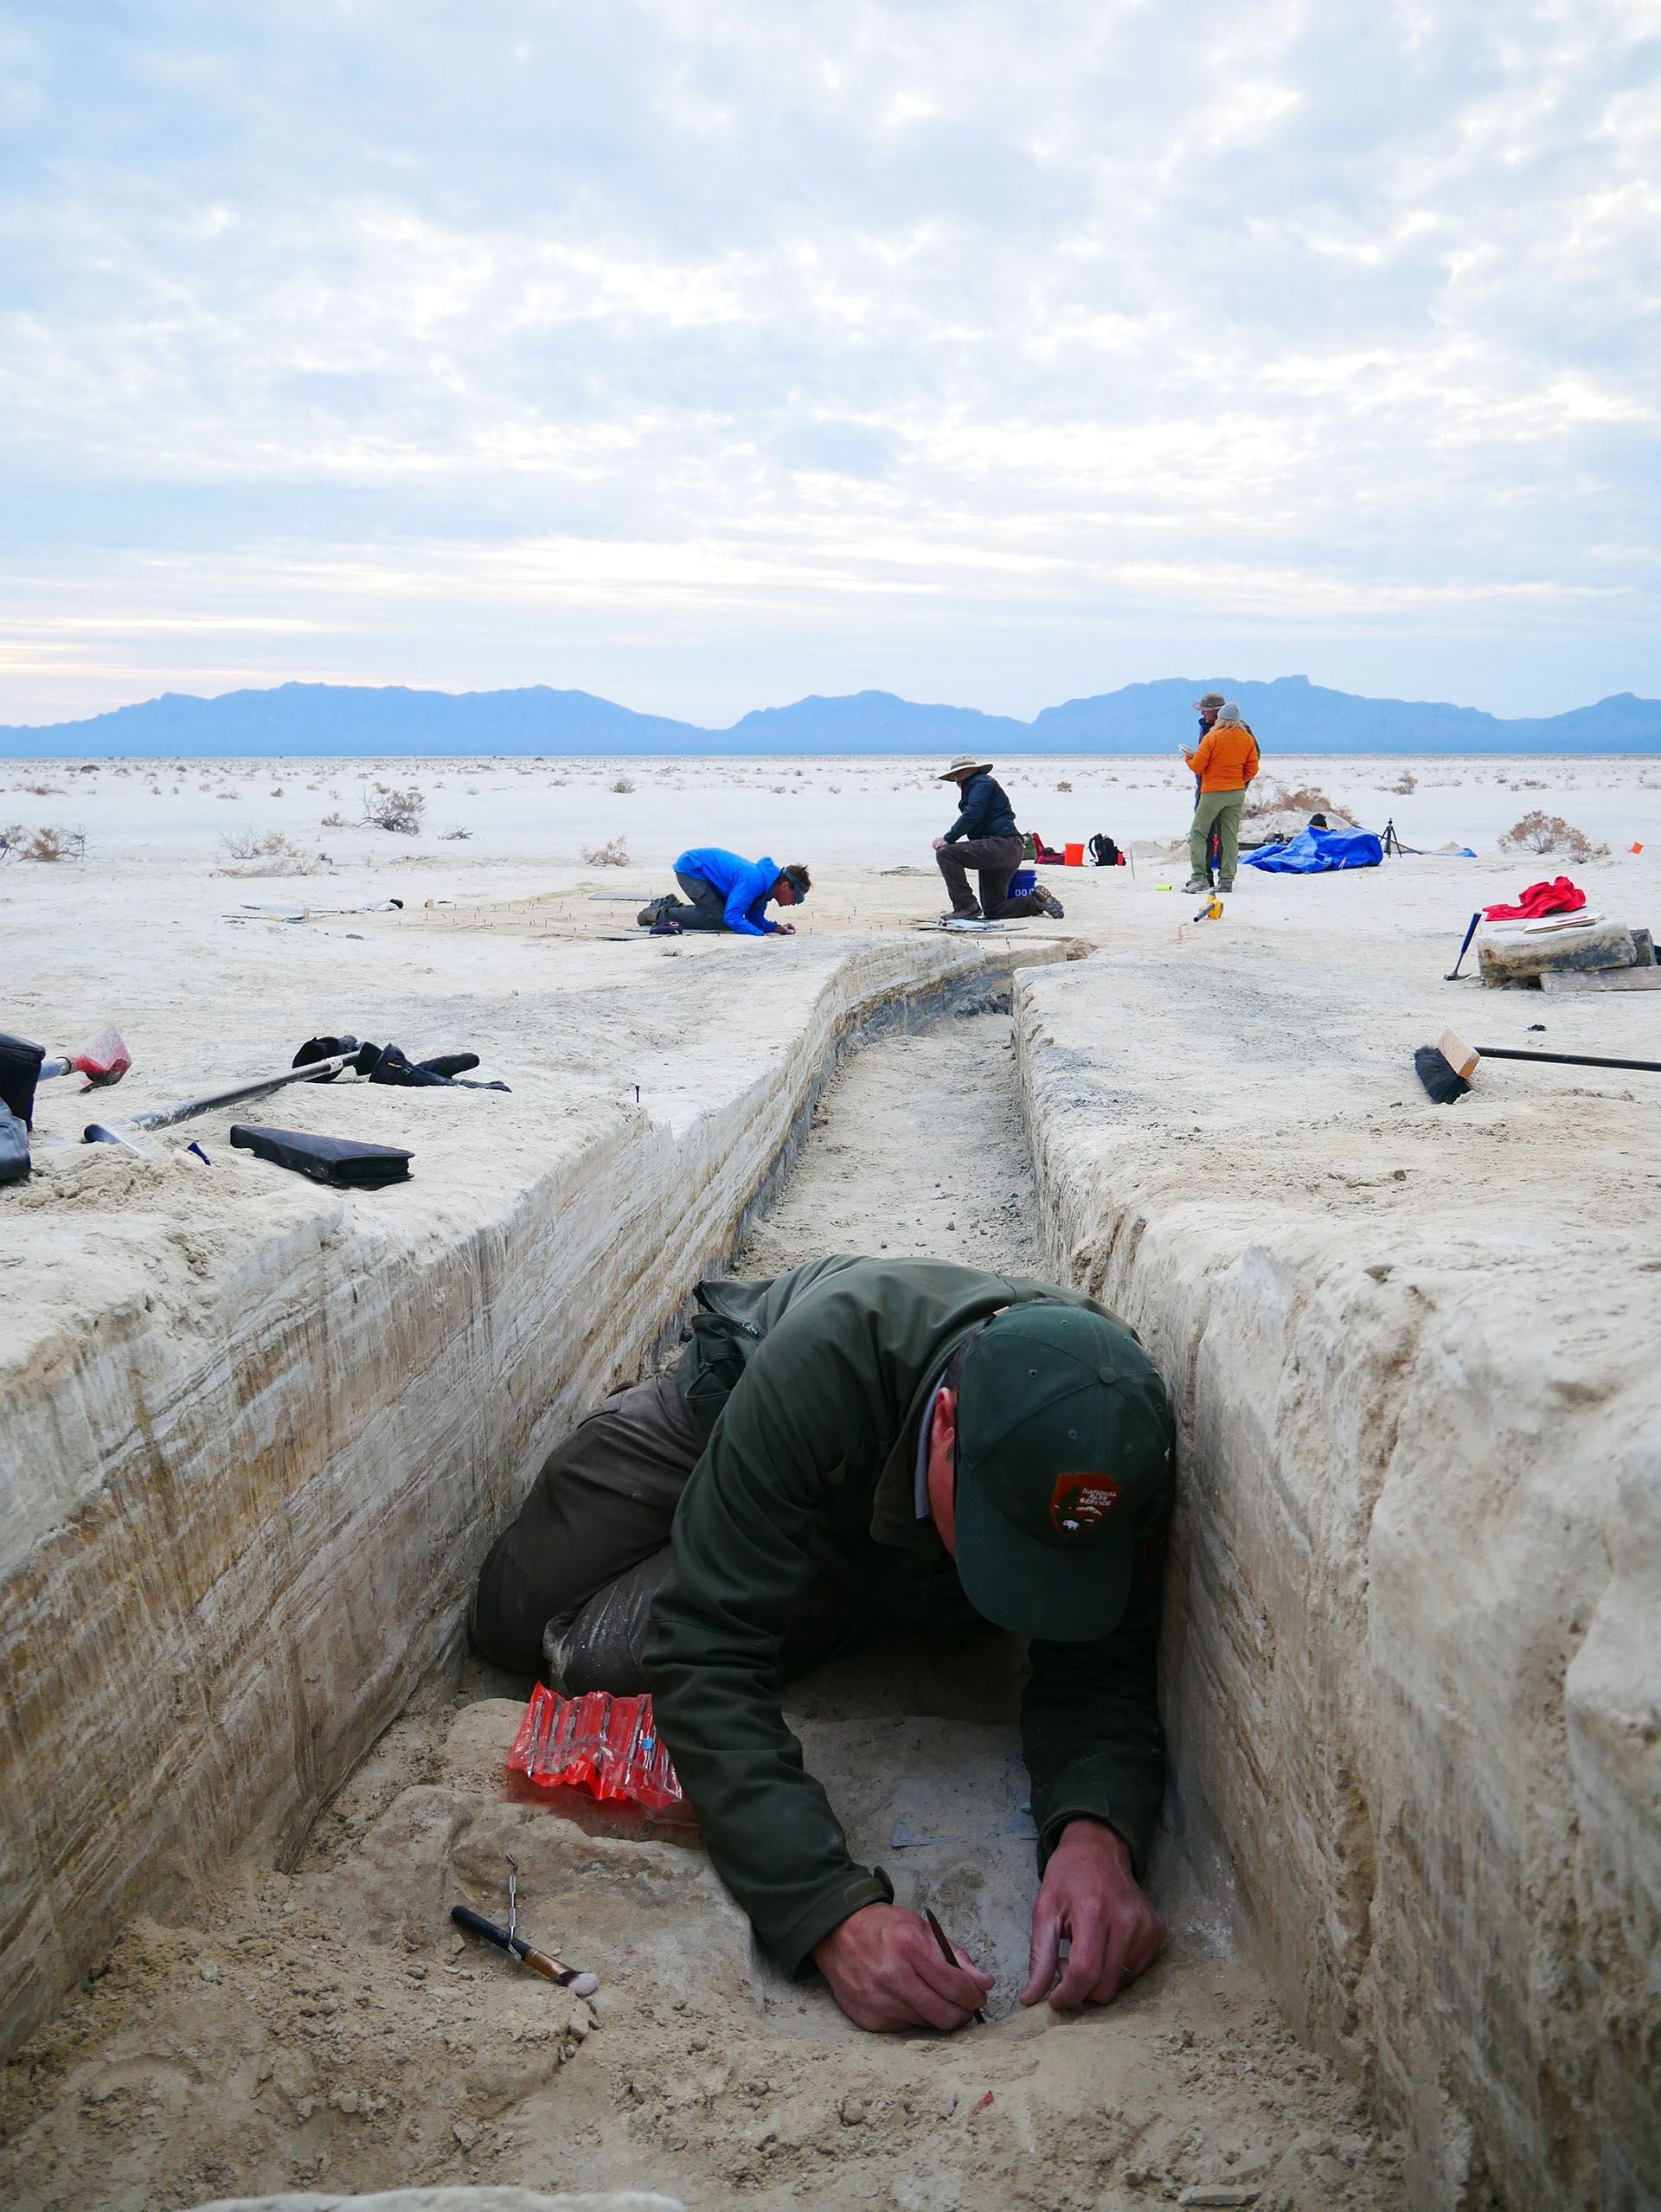 El director del programa de recursos del Parque Nacional White Sands, David Bustos, trabaja en una zanja excavada para exponer las capas de sedimentos en el sitio de estudio. (Crédito:  National Park Service)